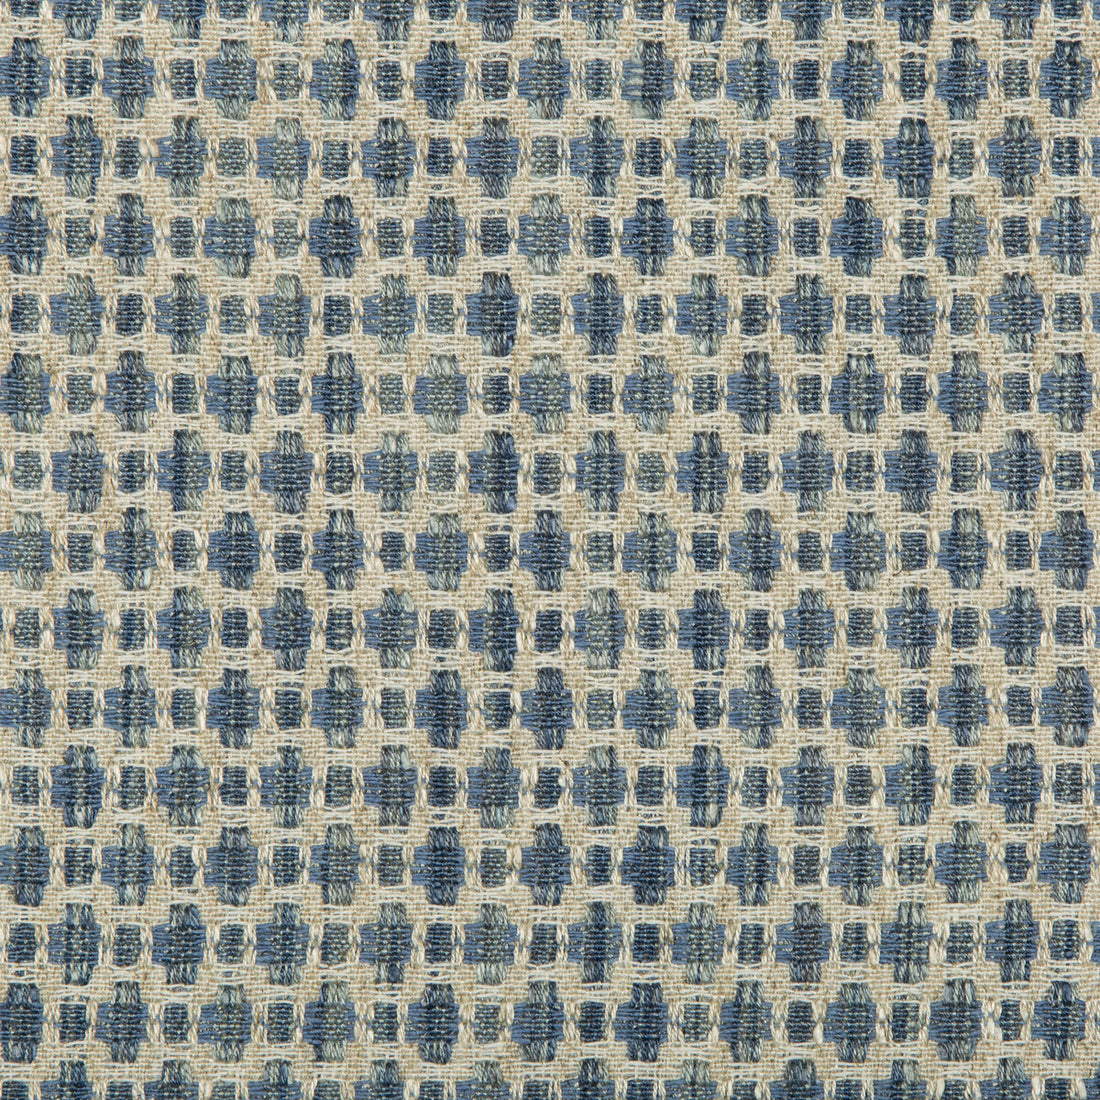 Kravet Design fabric in 35622-15 color - pattern 35622.15.0 - by Kravet Design